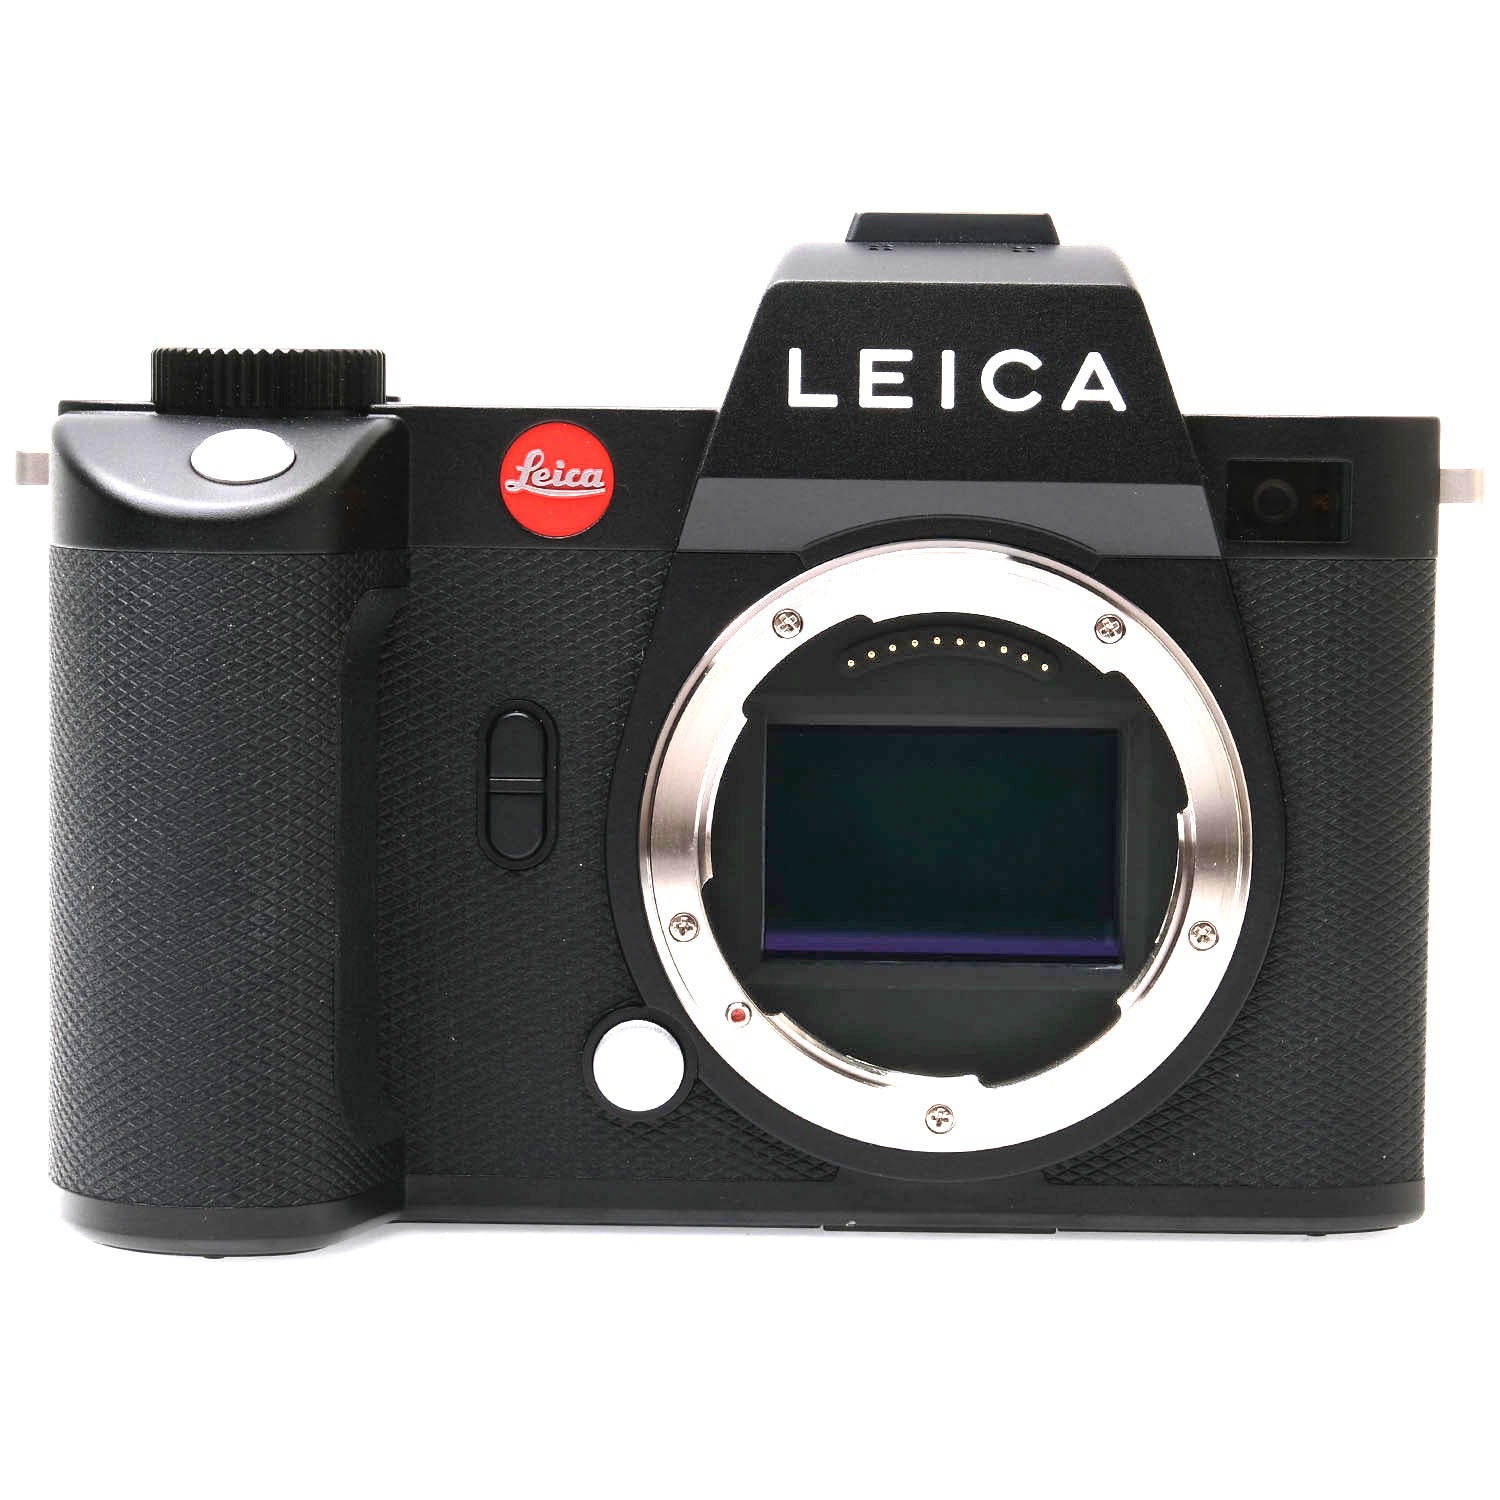 Leica SL2 5560635